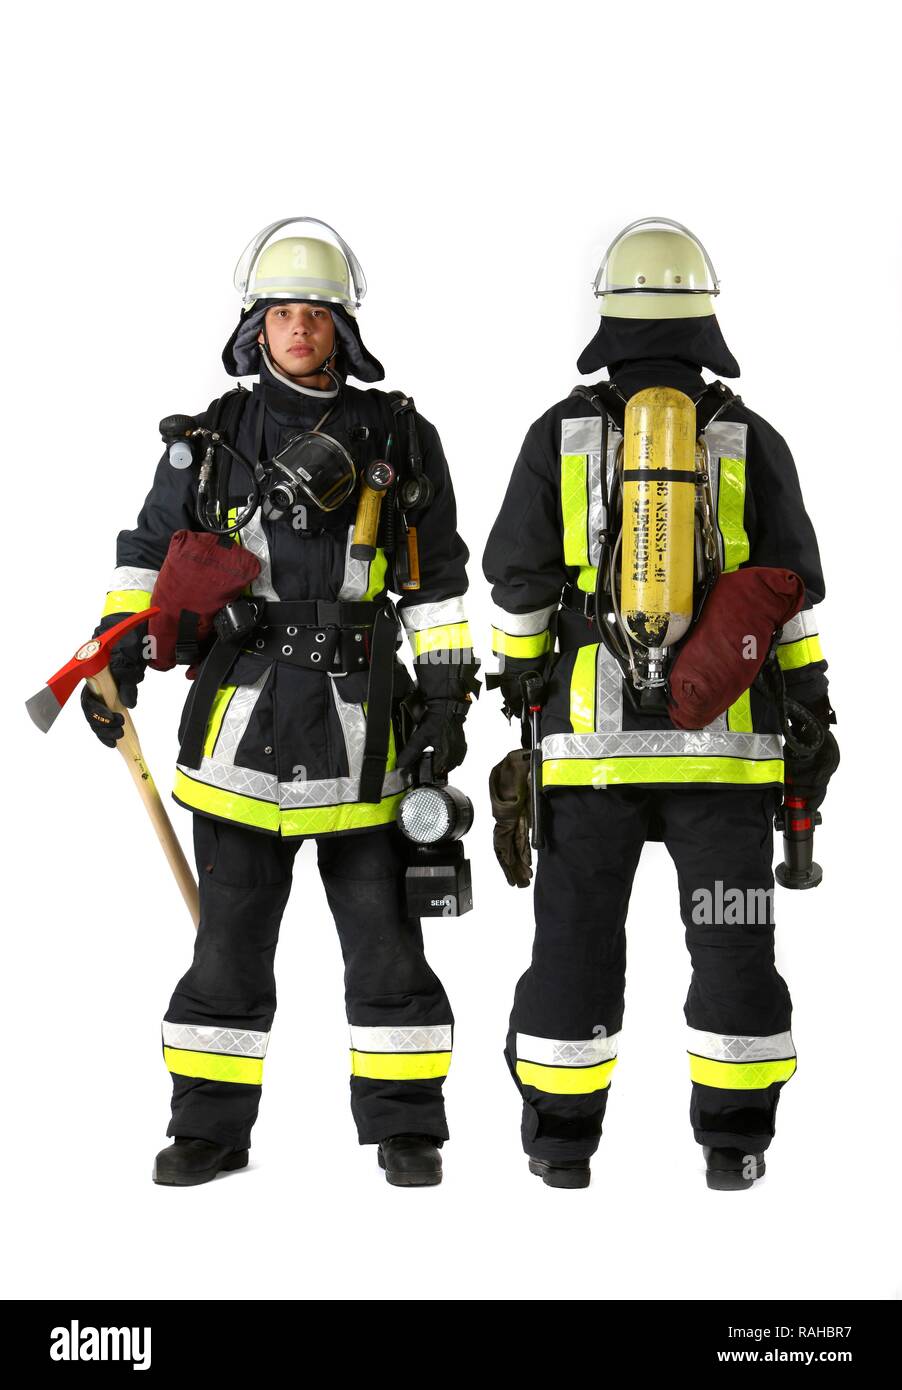 Pompiers, partie d'une équipe d'intervention pour la lutte contre les incendies, de vêtements de protection en Nomex, un casque avec une visière, une hache d'incendie, Banque D'Images